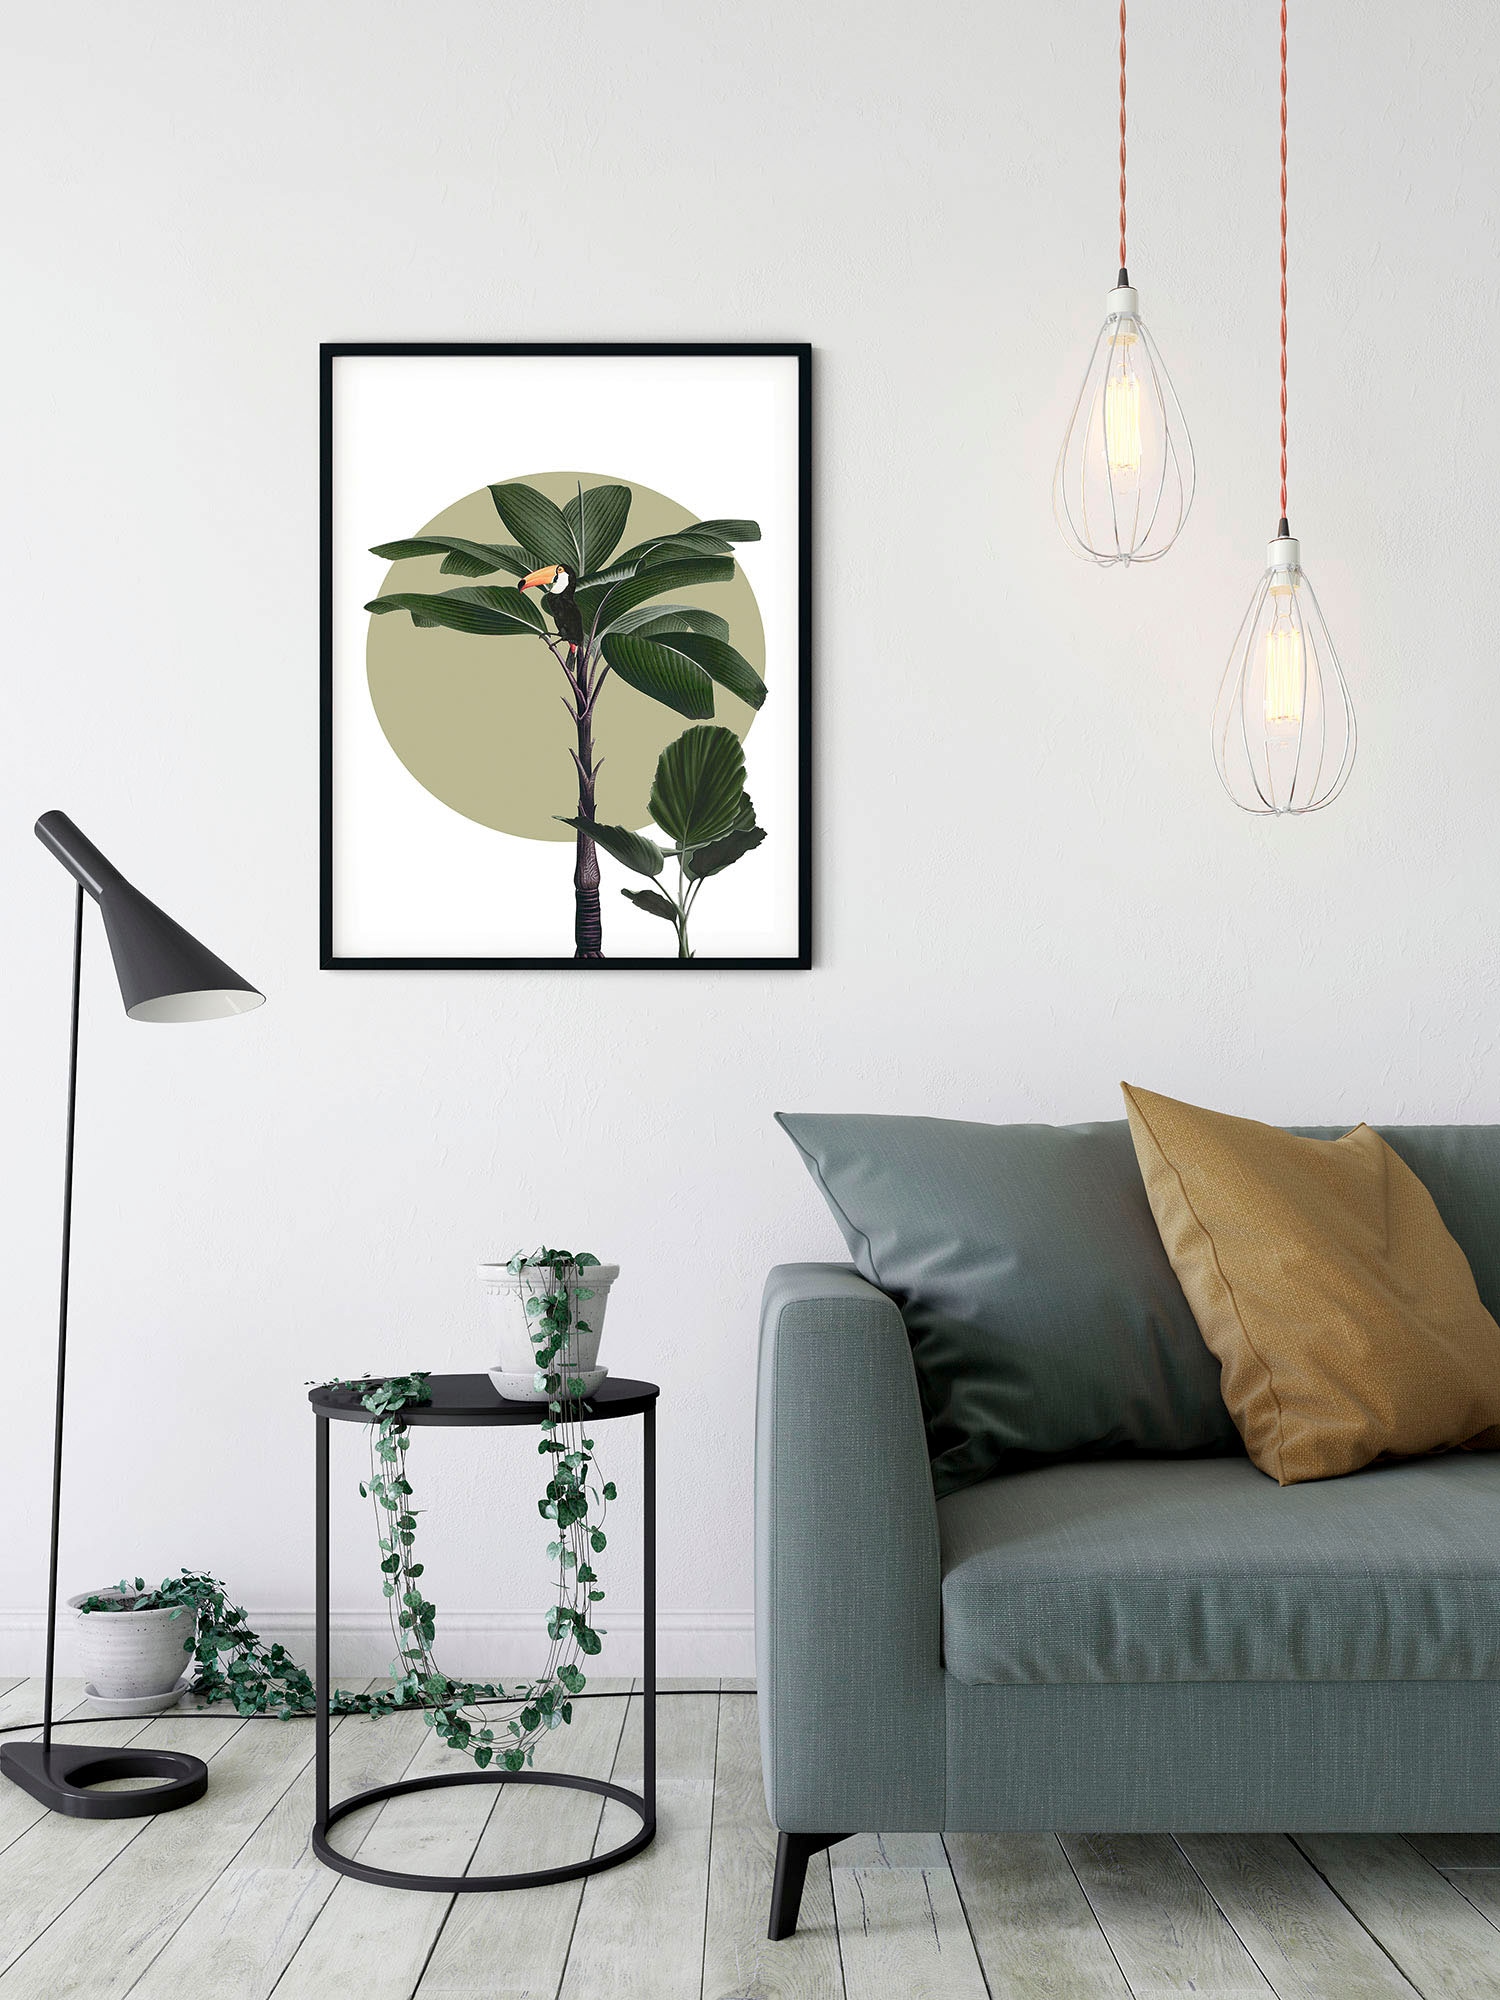 Komar Wandbild »Botanical Garden Palmtree«, (1 St.), Deutsches Premium-Poster Fotopapier mit seidenmatter Oberfläche und hoher Lichtbeständigkeit. Für fotorealistische Drucke mit gestochen scharfen Details und hervorragender Farbbrillanz.